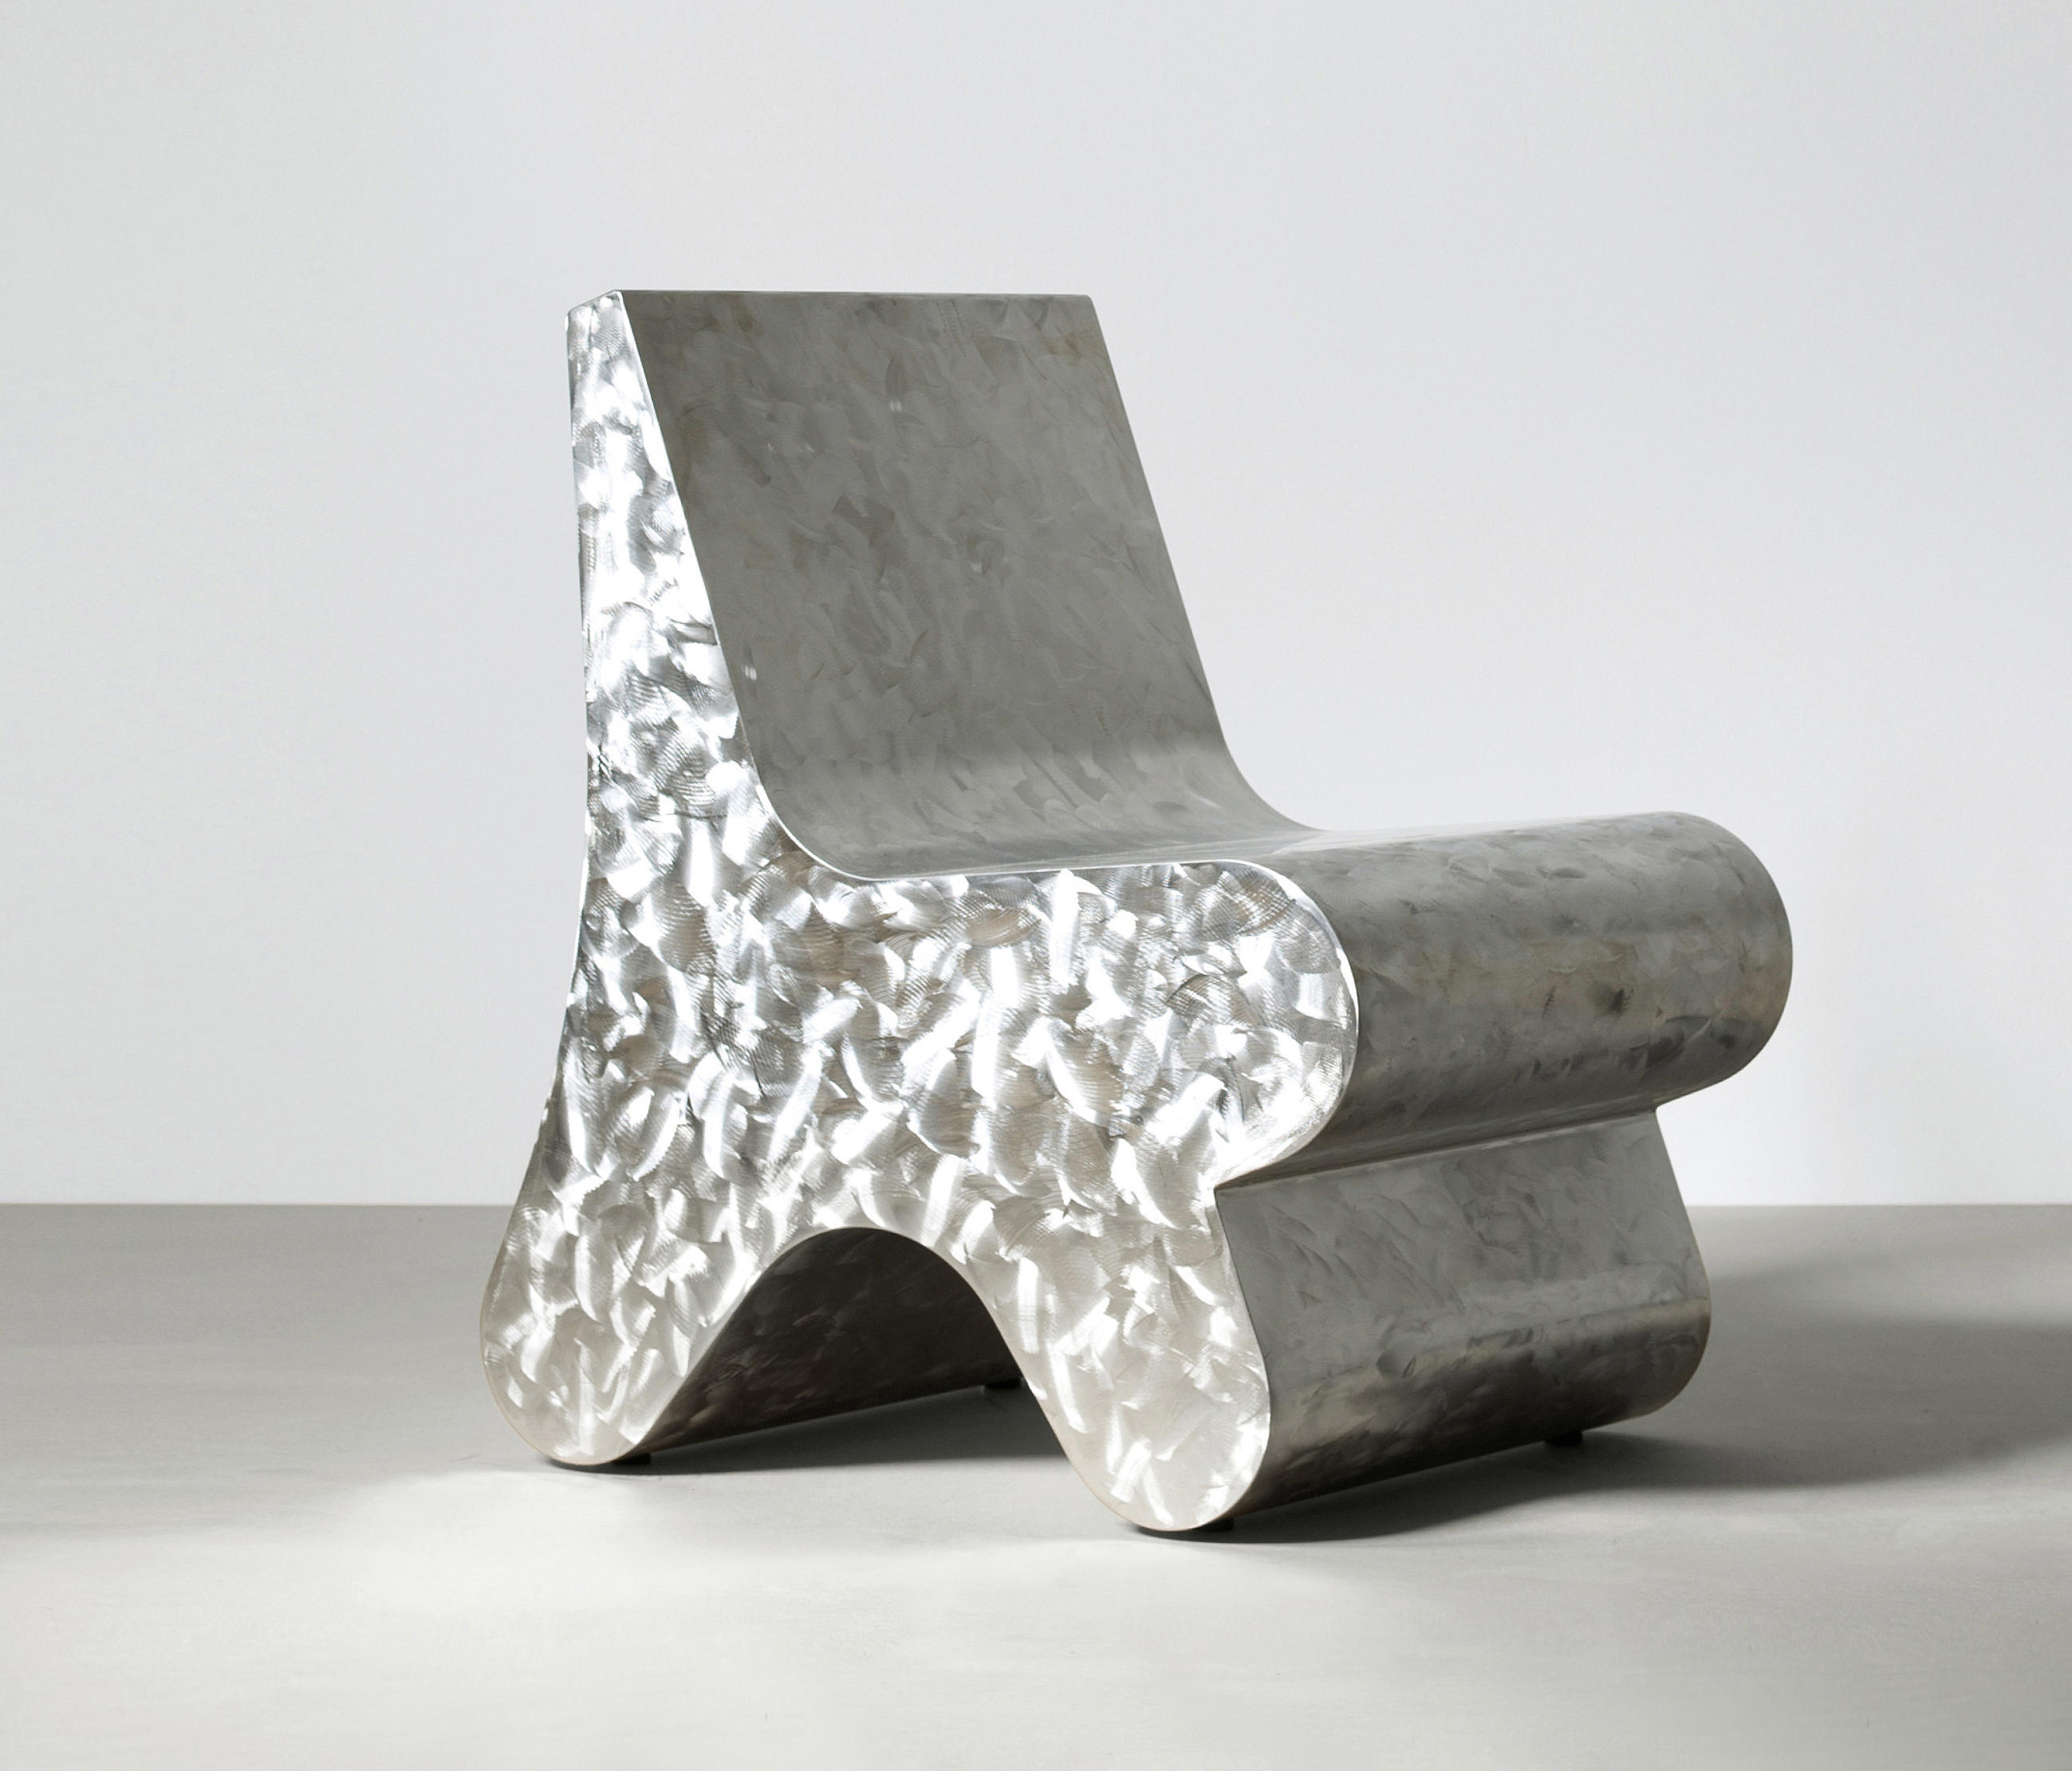 Seating Sculpture by Studio Benkert